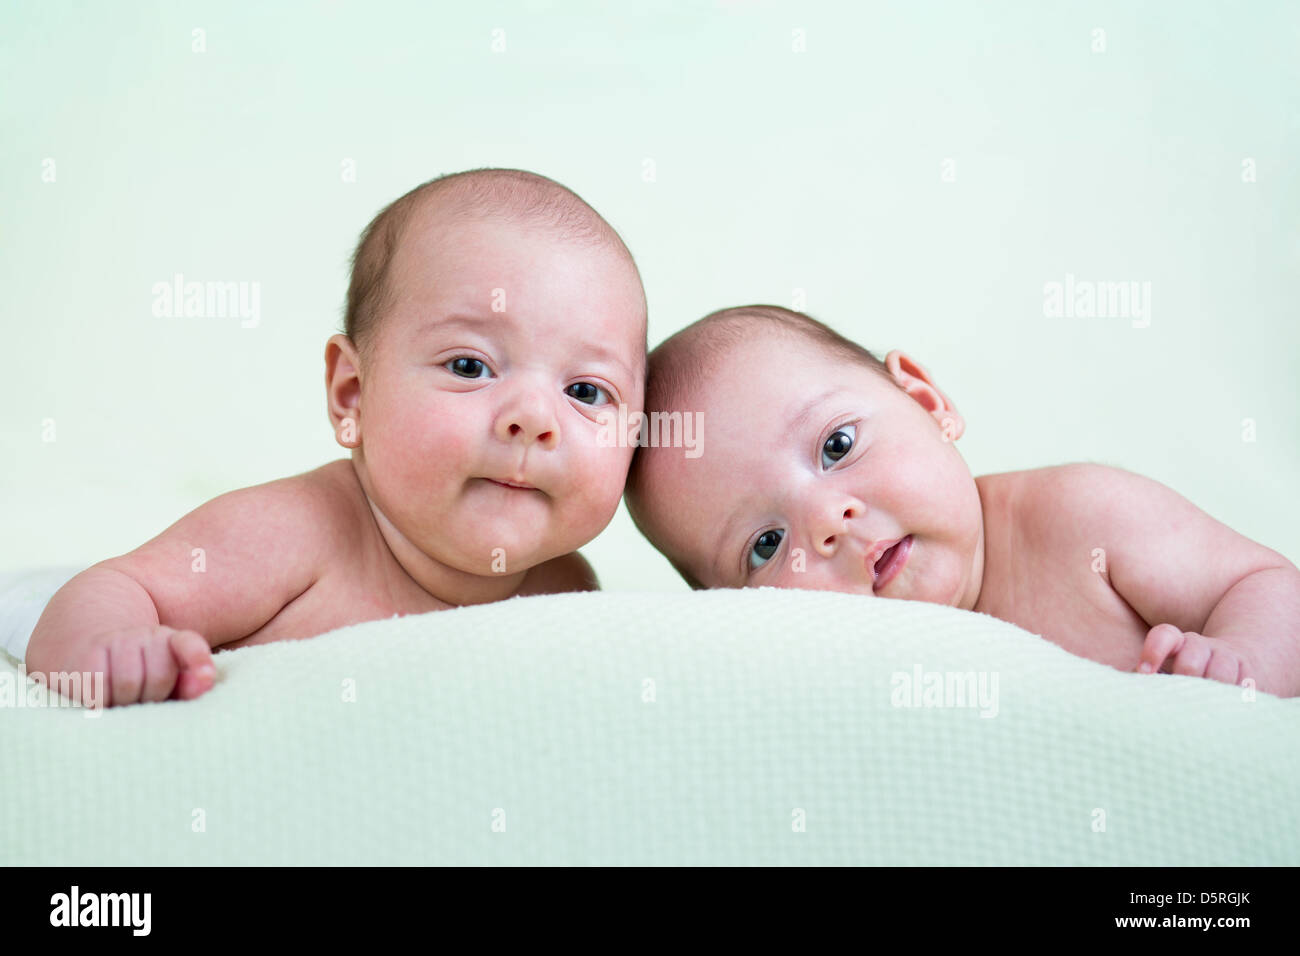 Drôle de bébé nouveau-né des jumeaux lying on stomach Banque D'Images